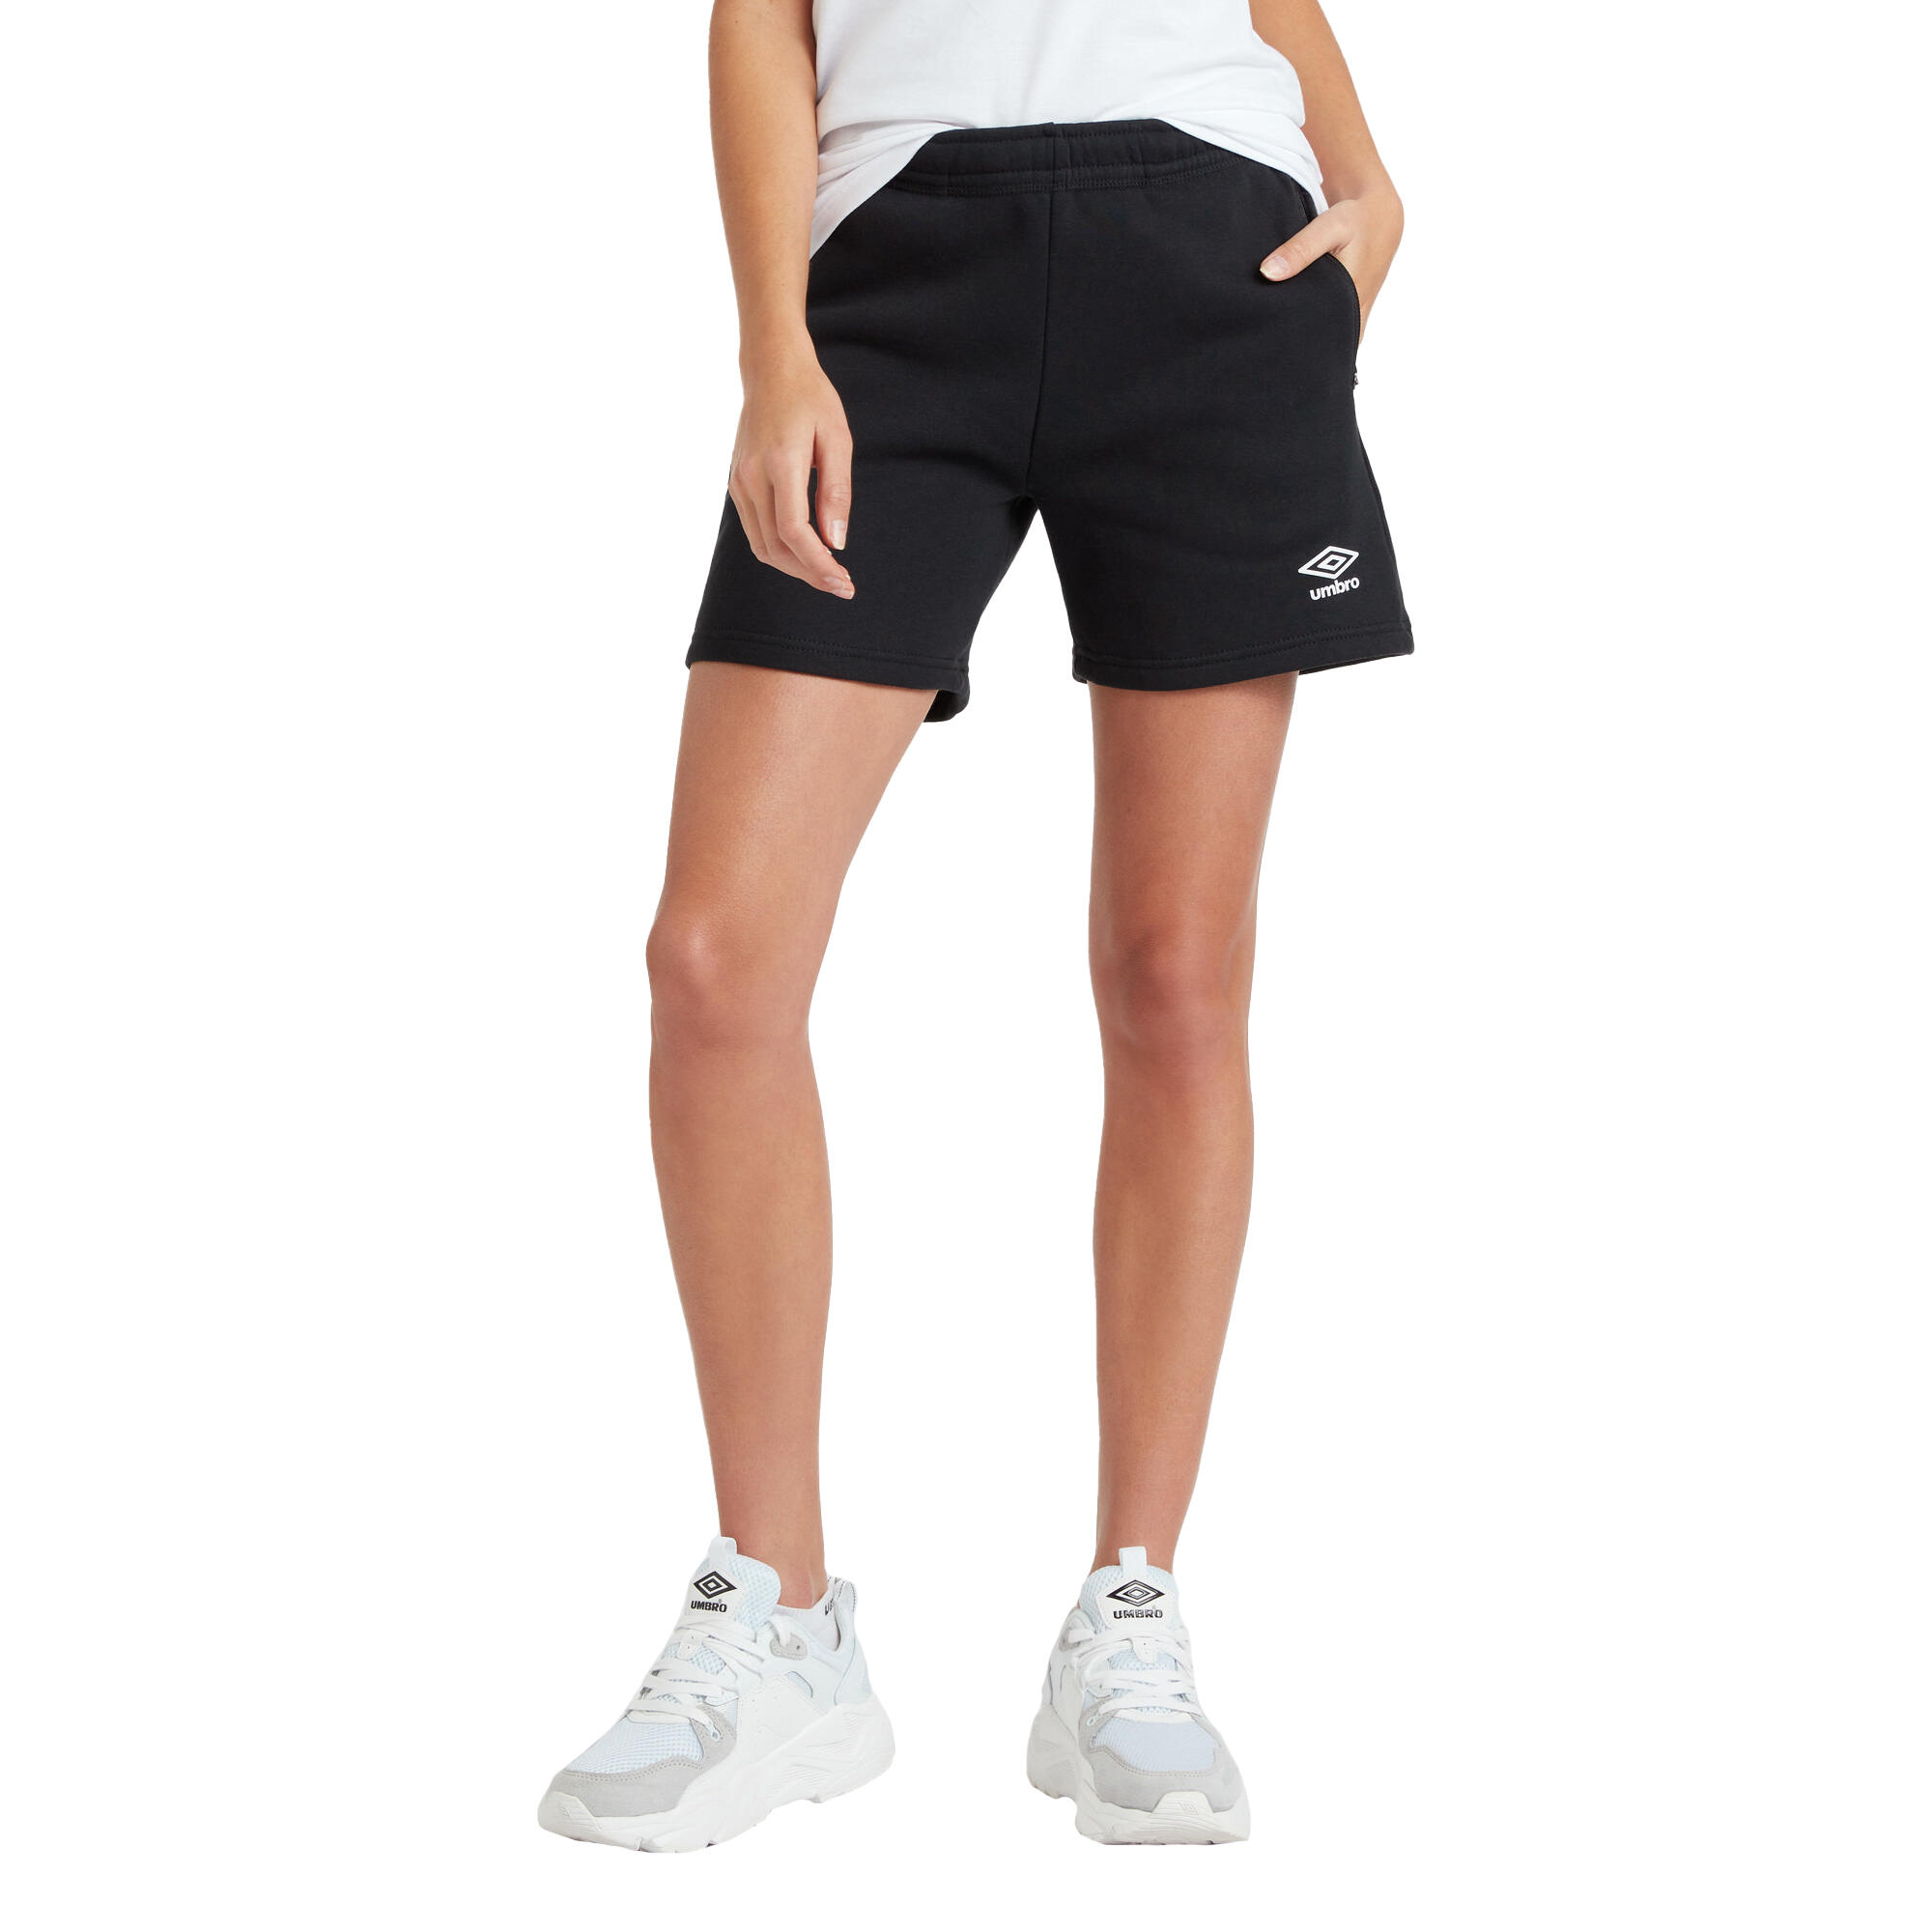 Womens/Ladies Club Leisure Shorts (Black/White) 3/4